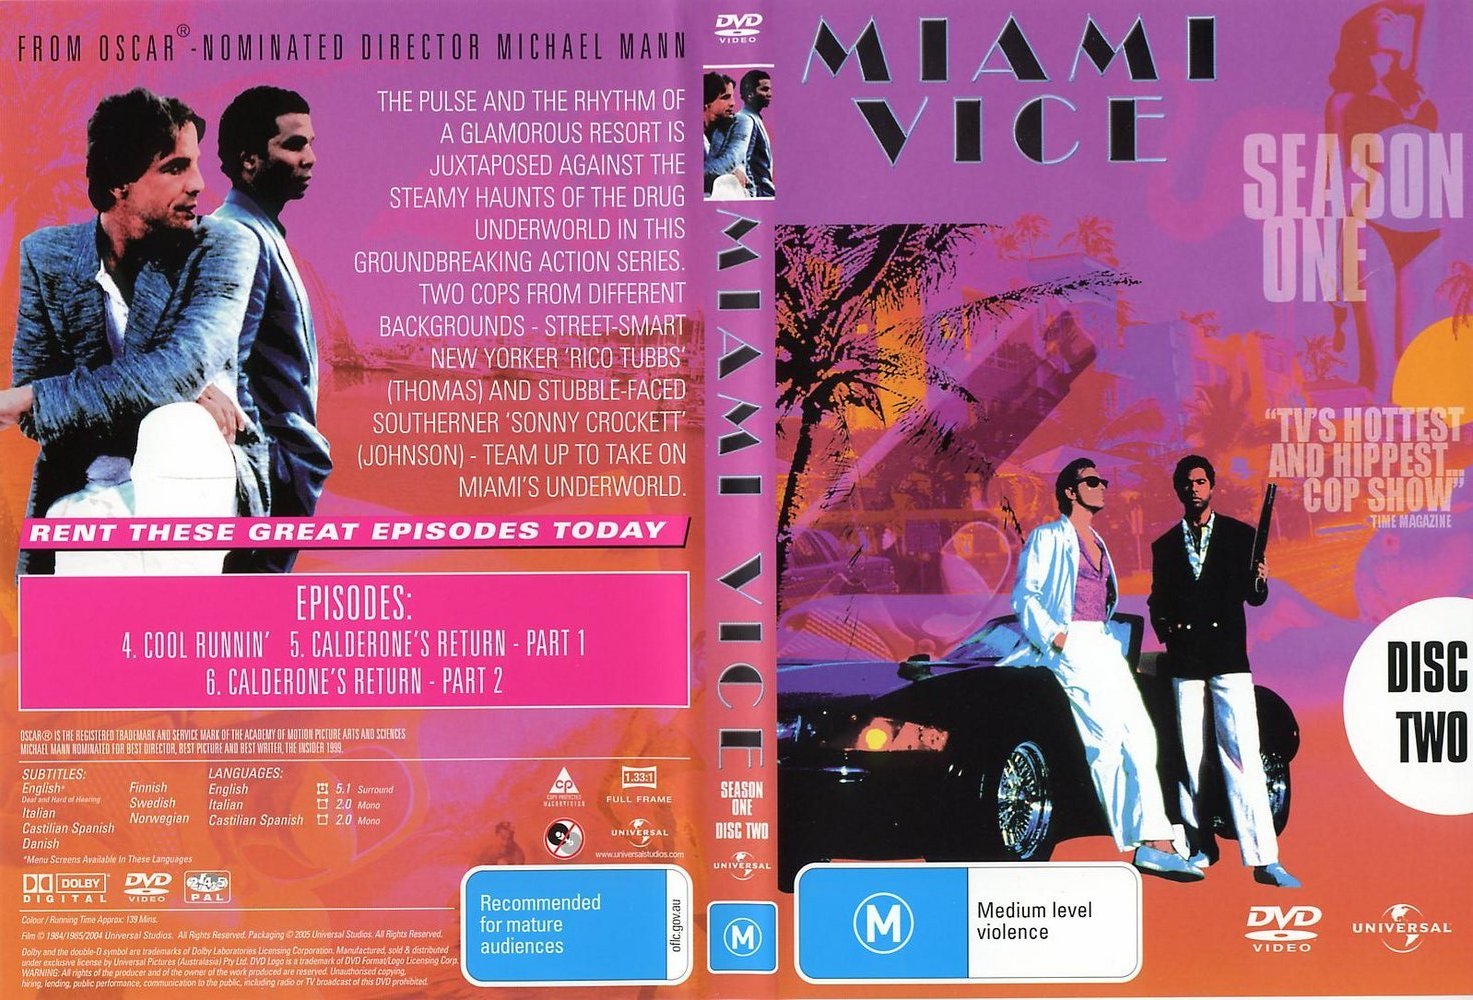 Miami Vice Season 1 Disc 2